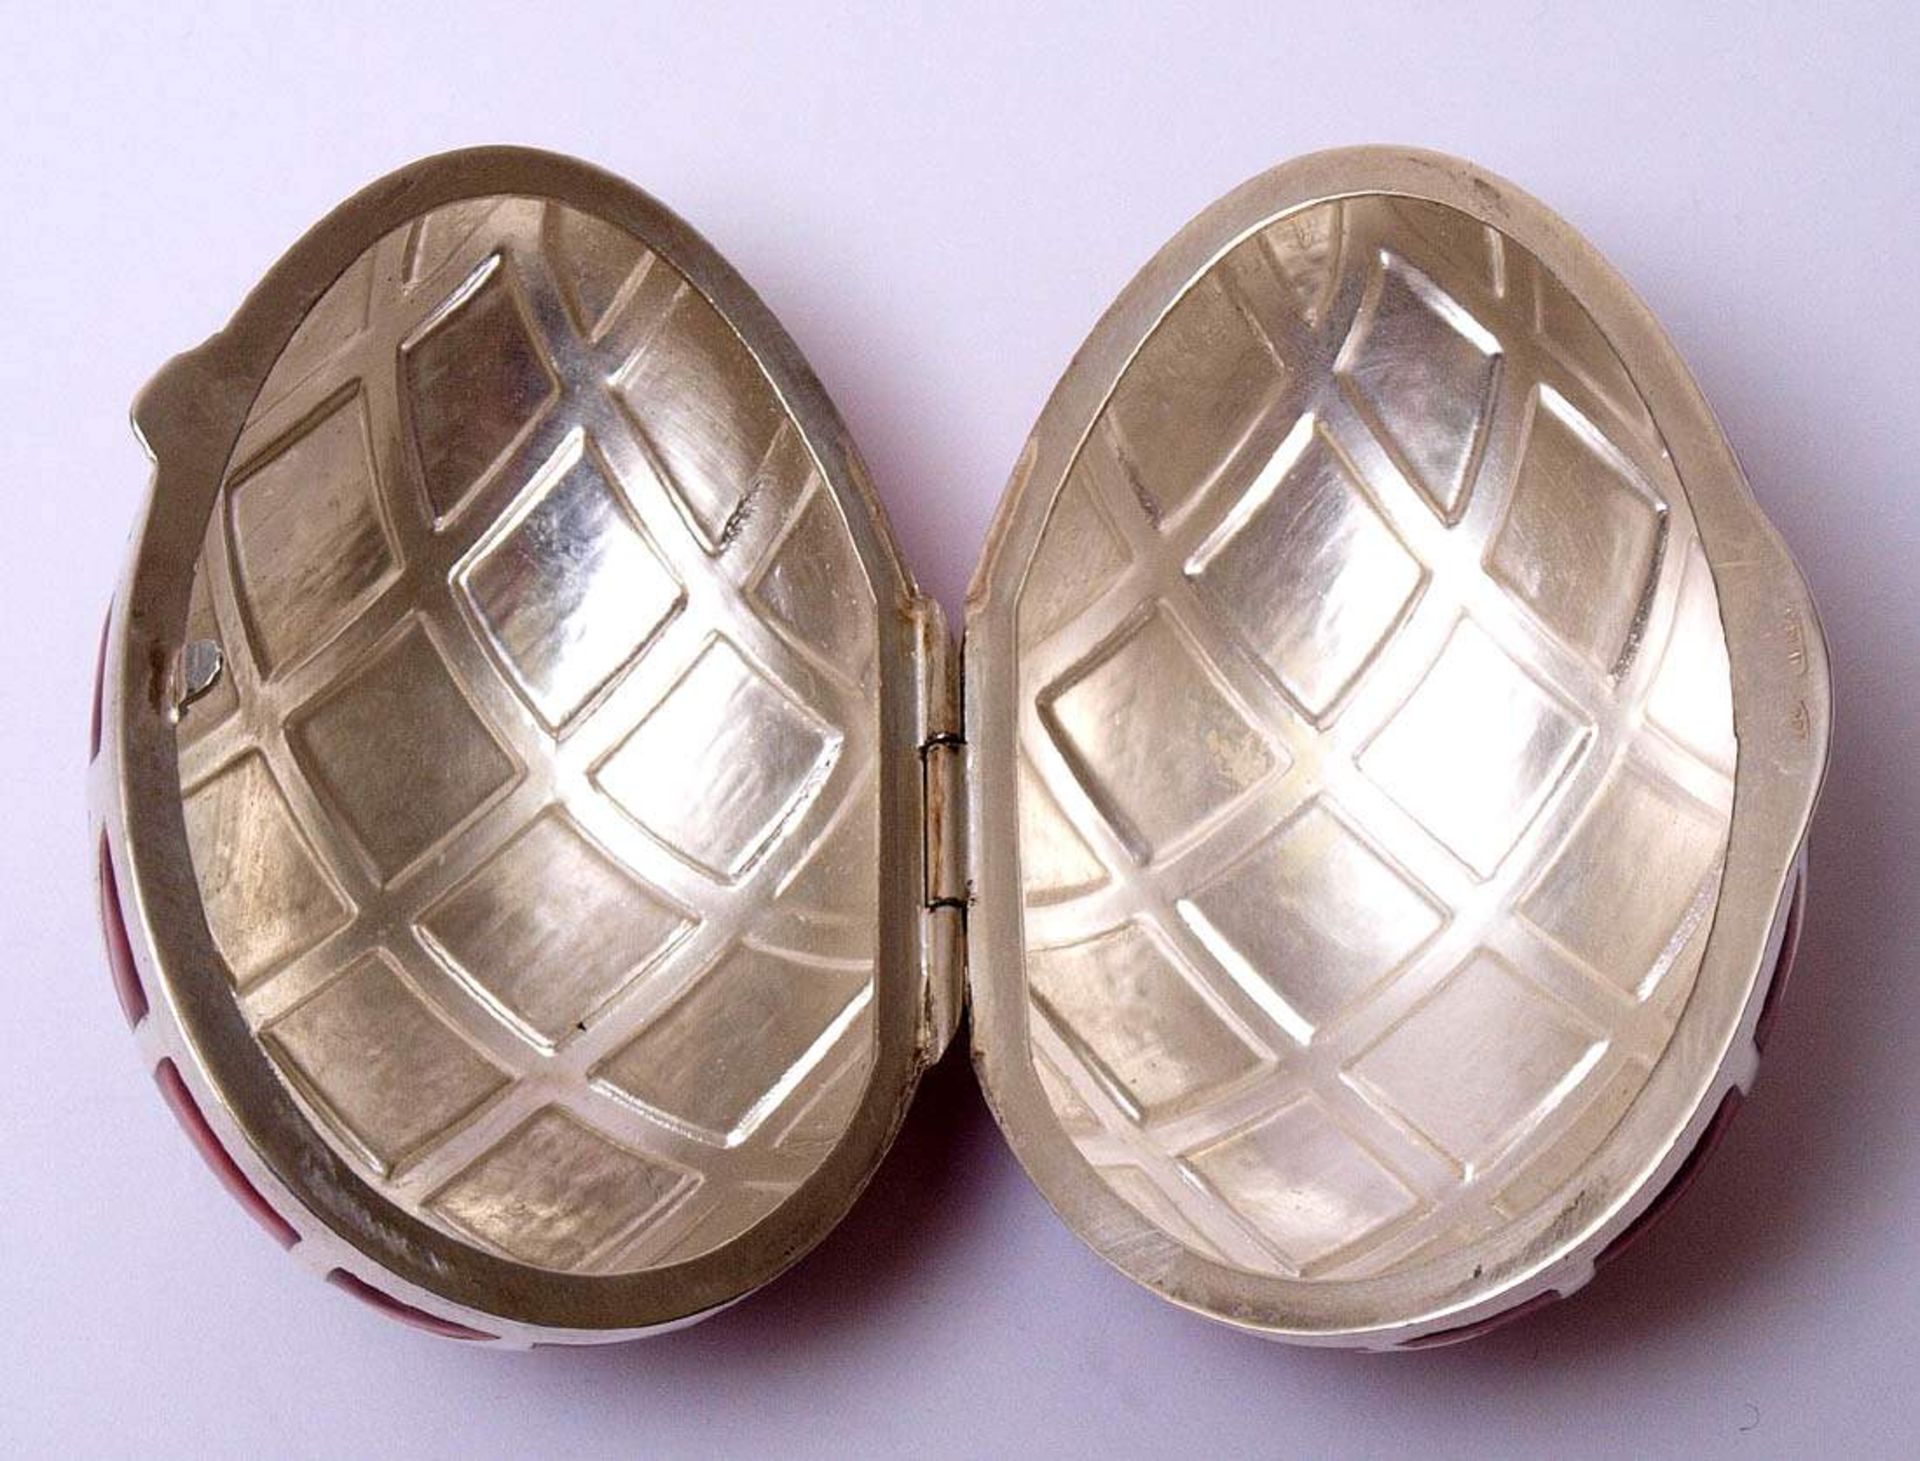 Deckeldose in EiformSIlberfarbenes Metall mit rotem Transluszidemail. L.6cm. - Bild 3 aus 4